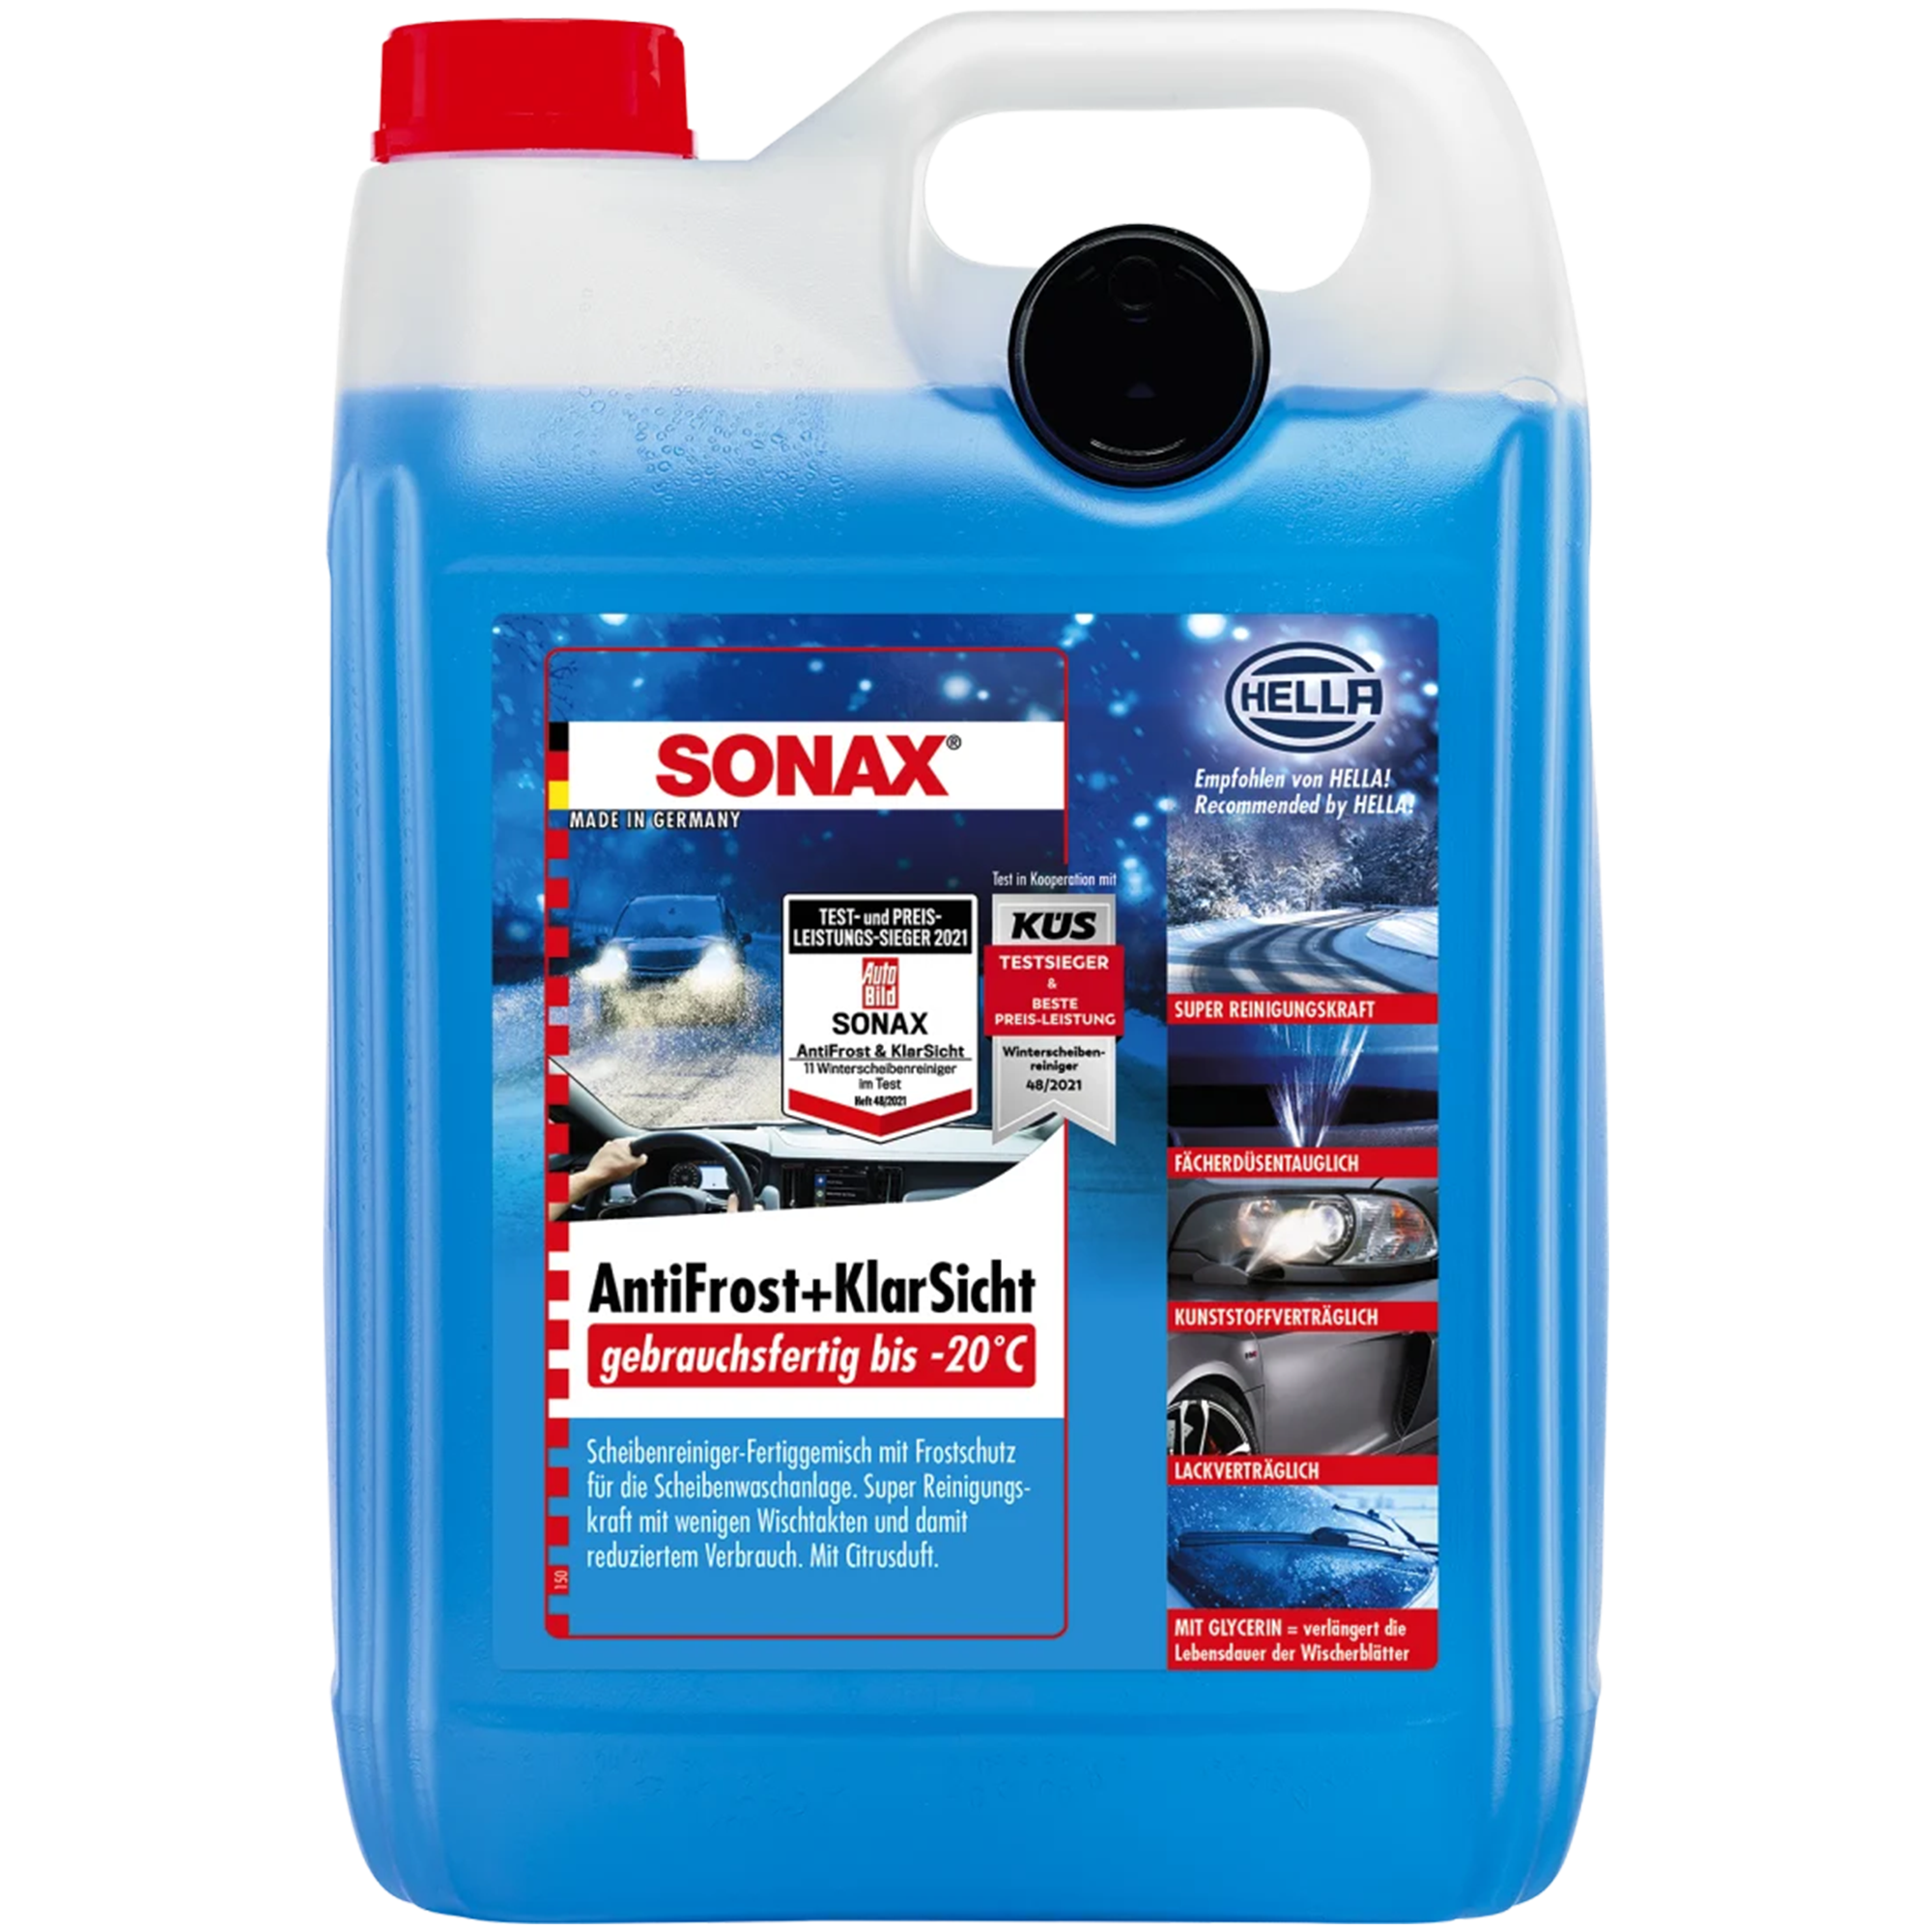 SONAX Antifrost & Klarsicht - gebrauchsfertig bis -20°C – KFZ-Teile- Brinkmann